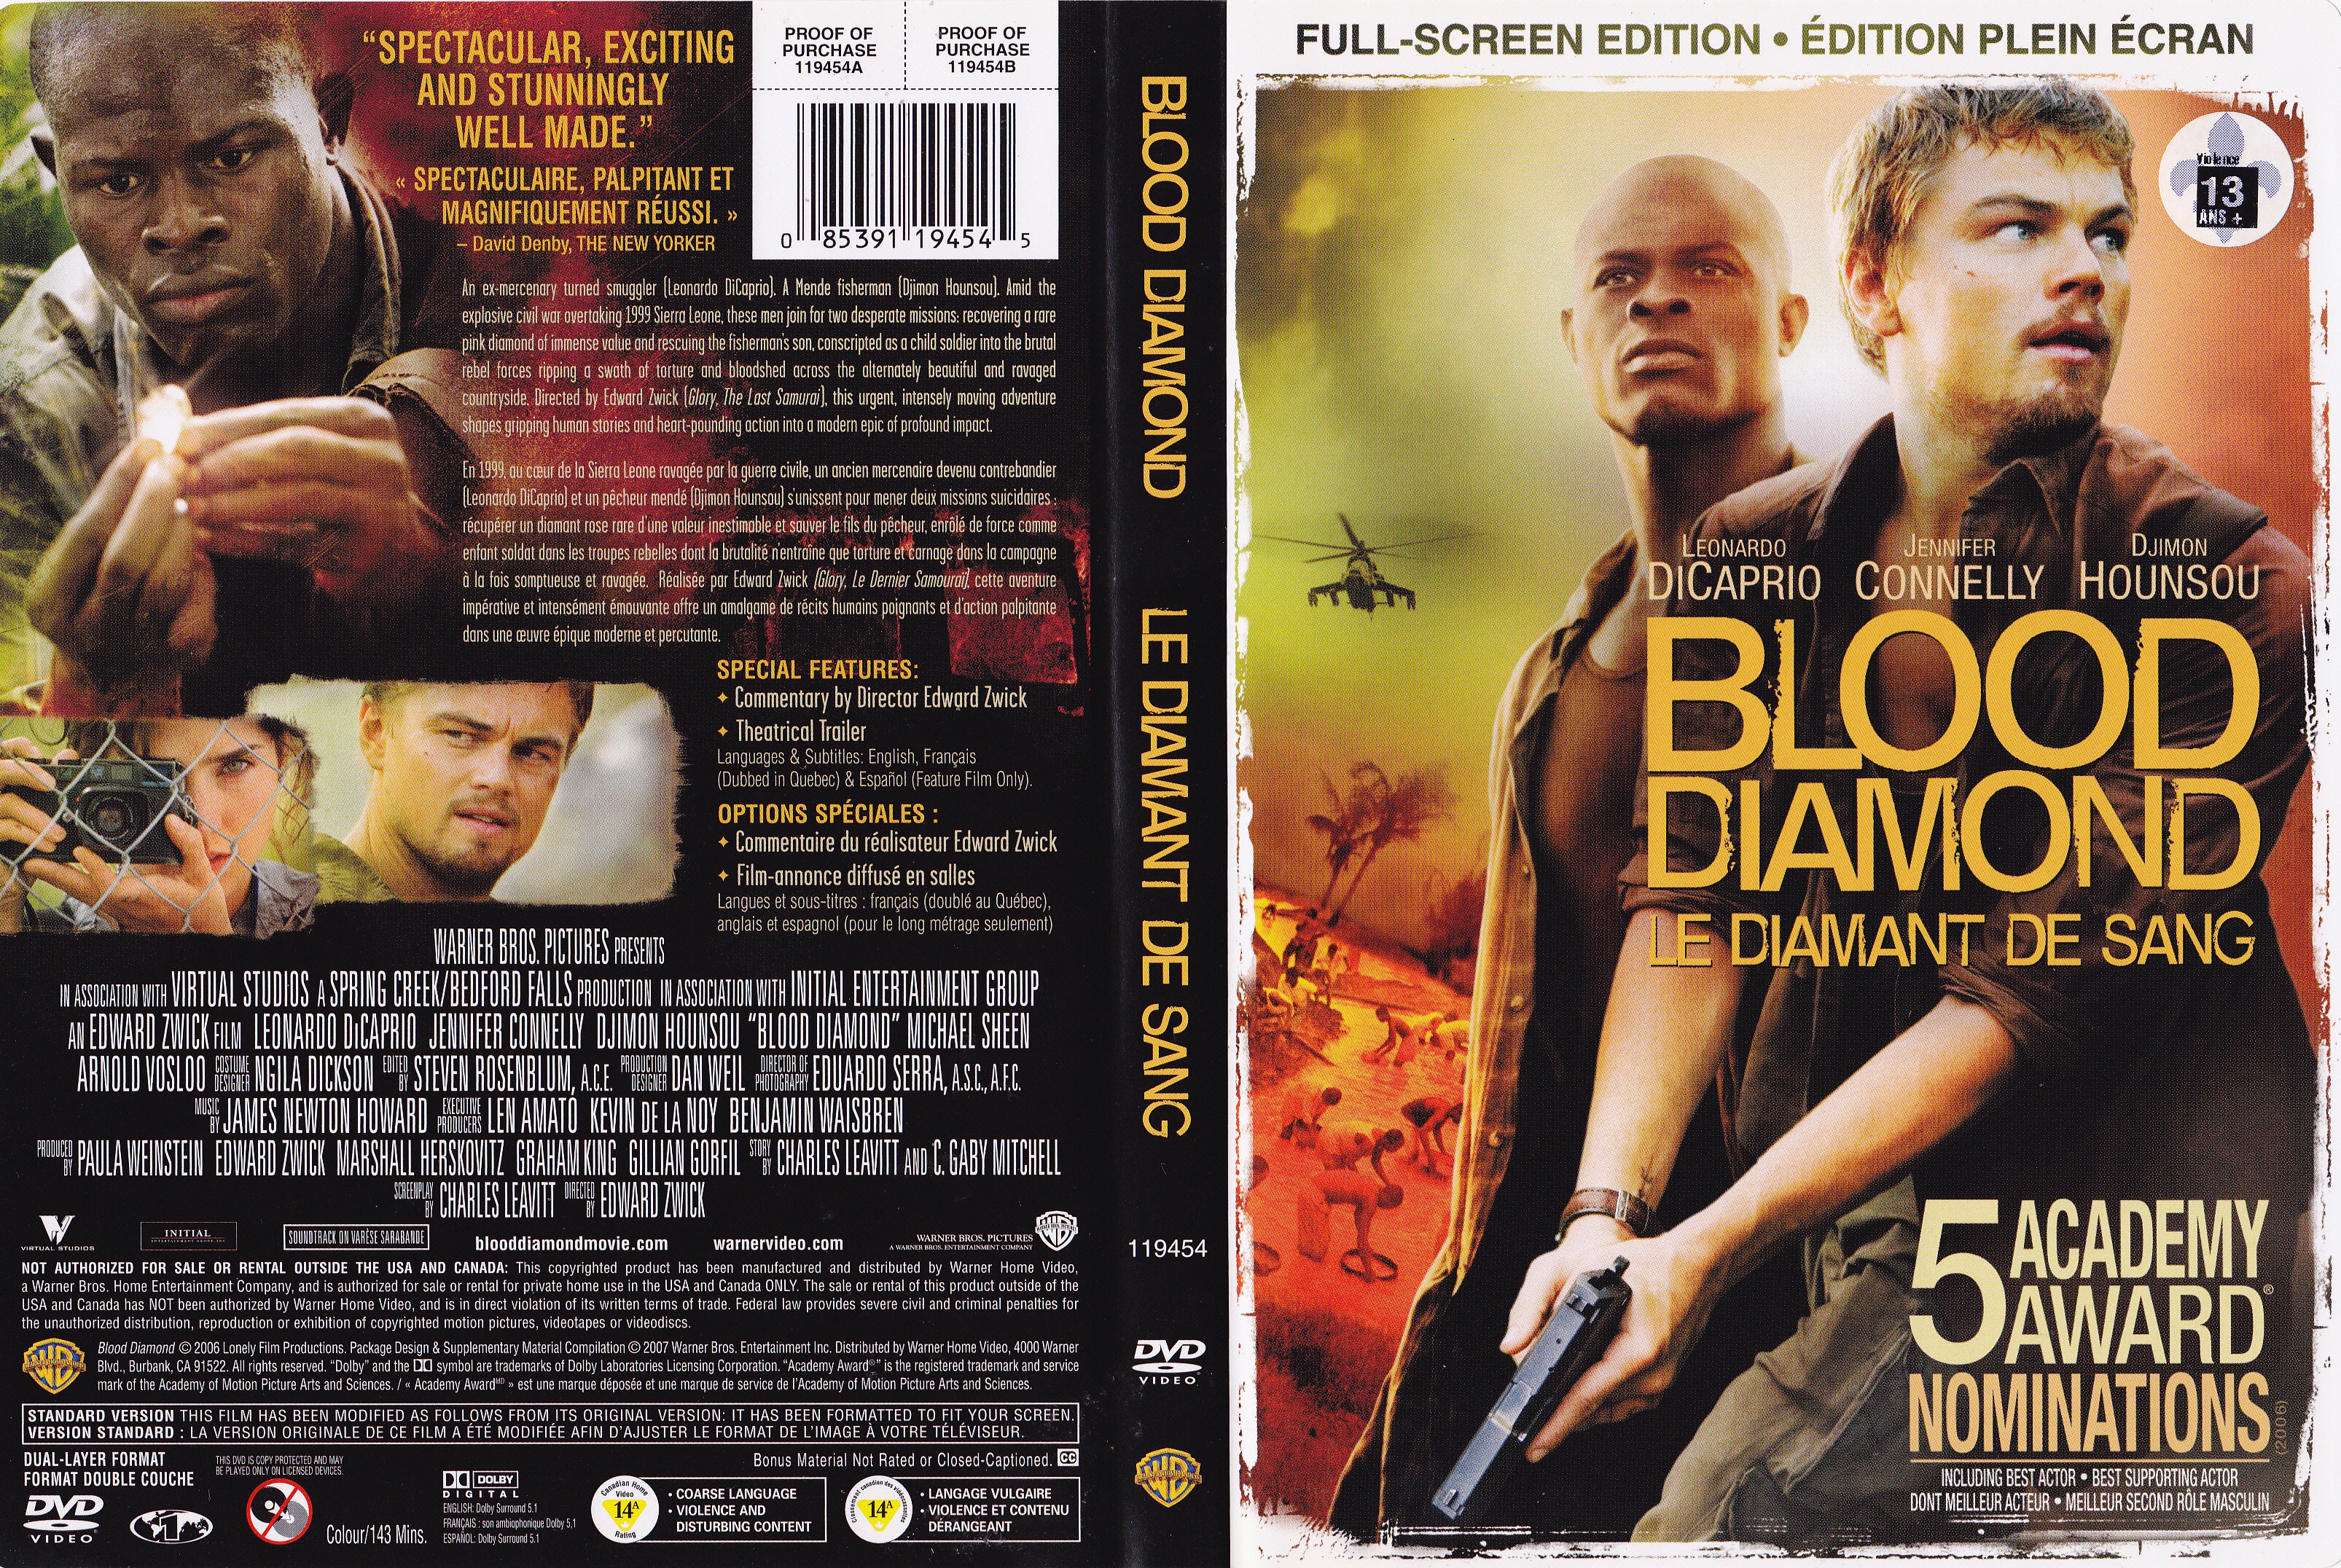 Jaquette DVD Le diamant de sang - Blood diamond (canadienne)